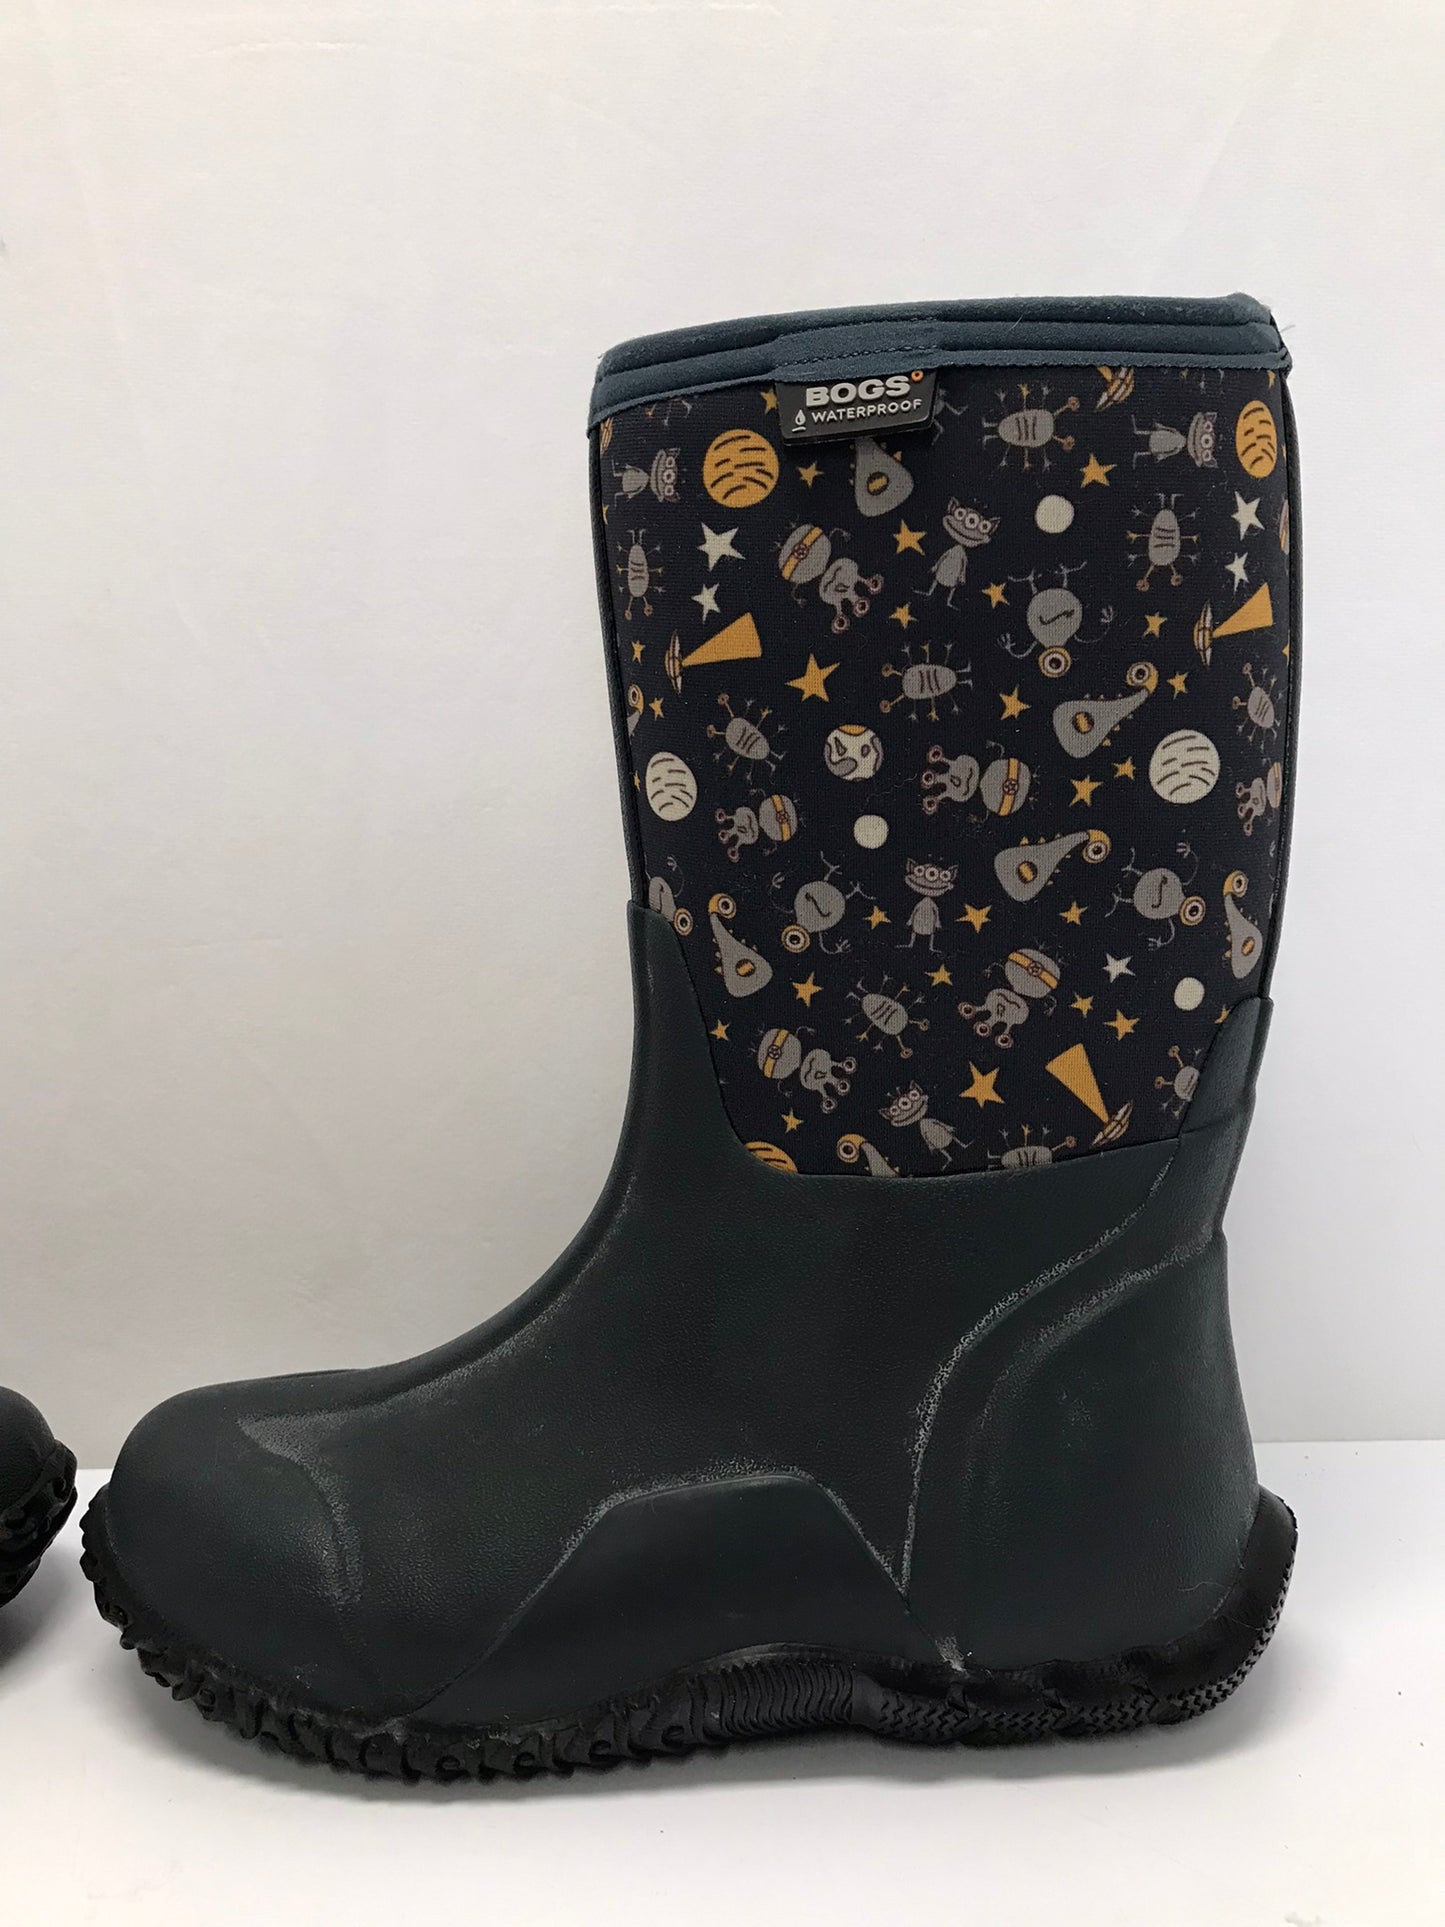 Bogs Brand Child Size 5 Blue Grey -30 Degree  Neoprene Rubber Rain Winter Snow Waterproof Boots